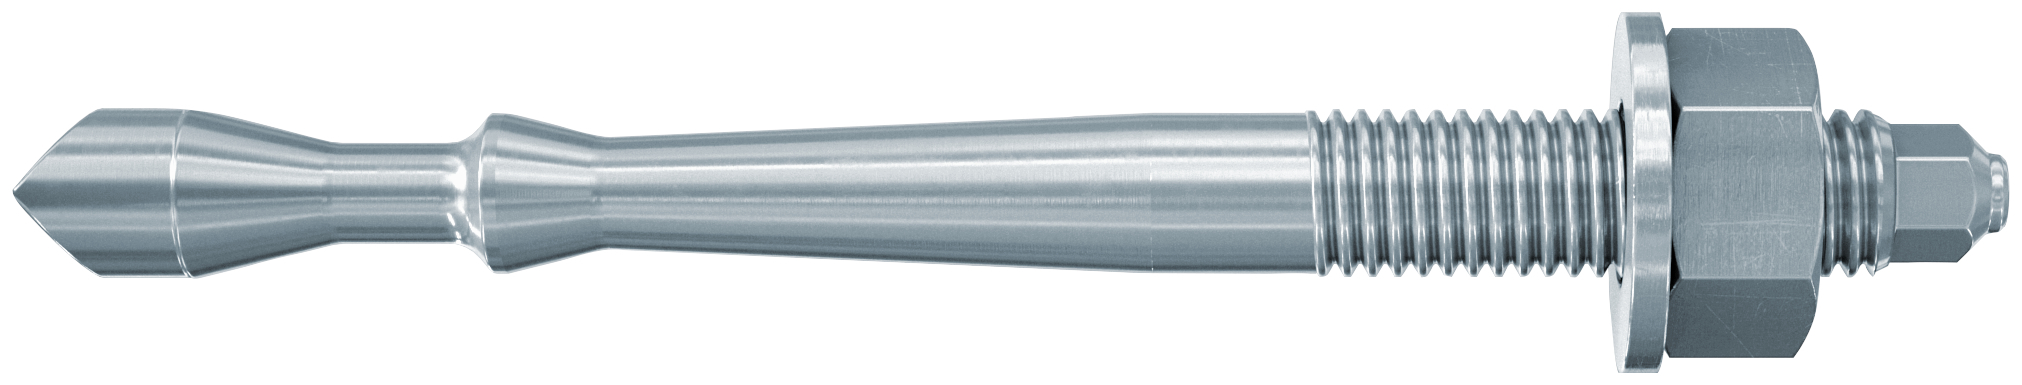 fischer Barra multicono in acciaio FHB II-A S M16x95-60 per ancorante chimico FIS HB (1 Pz.) Barra multicono corta in acciaio zincato classe 8.8. Massime prestazioni a trazione in calcestruzzo fessurato e a ridotte distanze dai bordi. fie1181